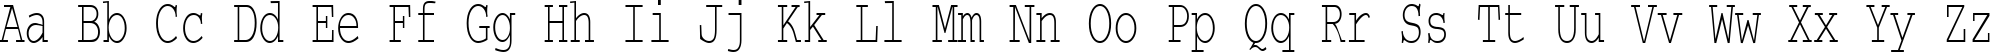 Пример написания английского алфавита шрифтом CourierCTT_65